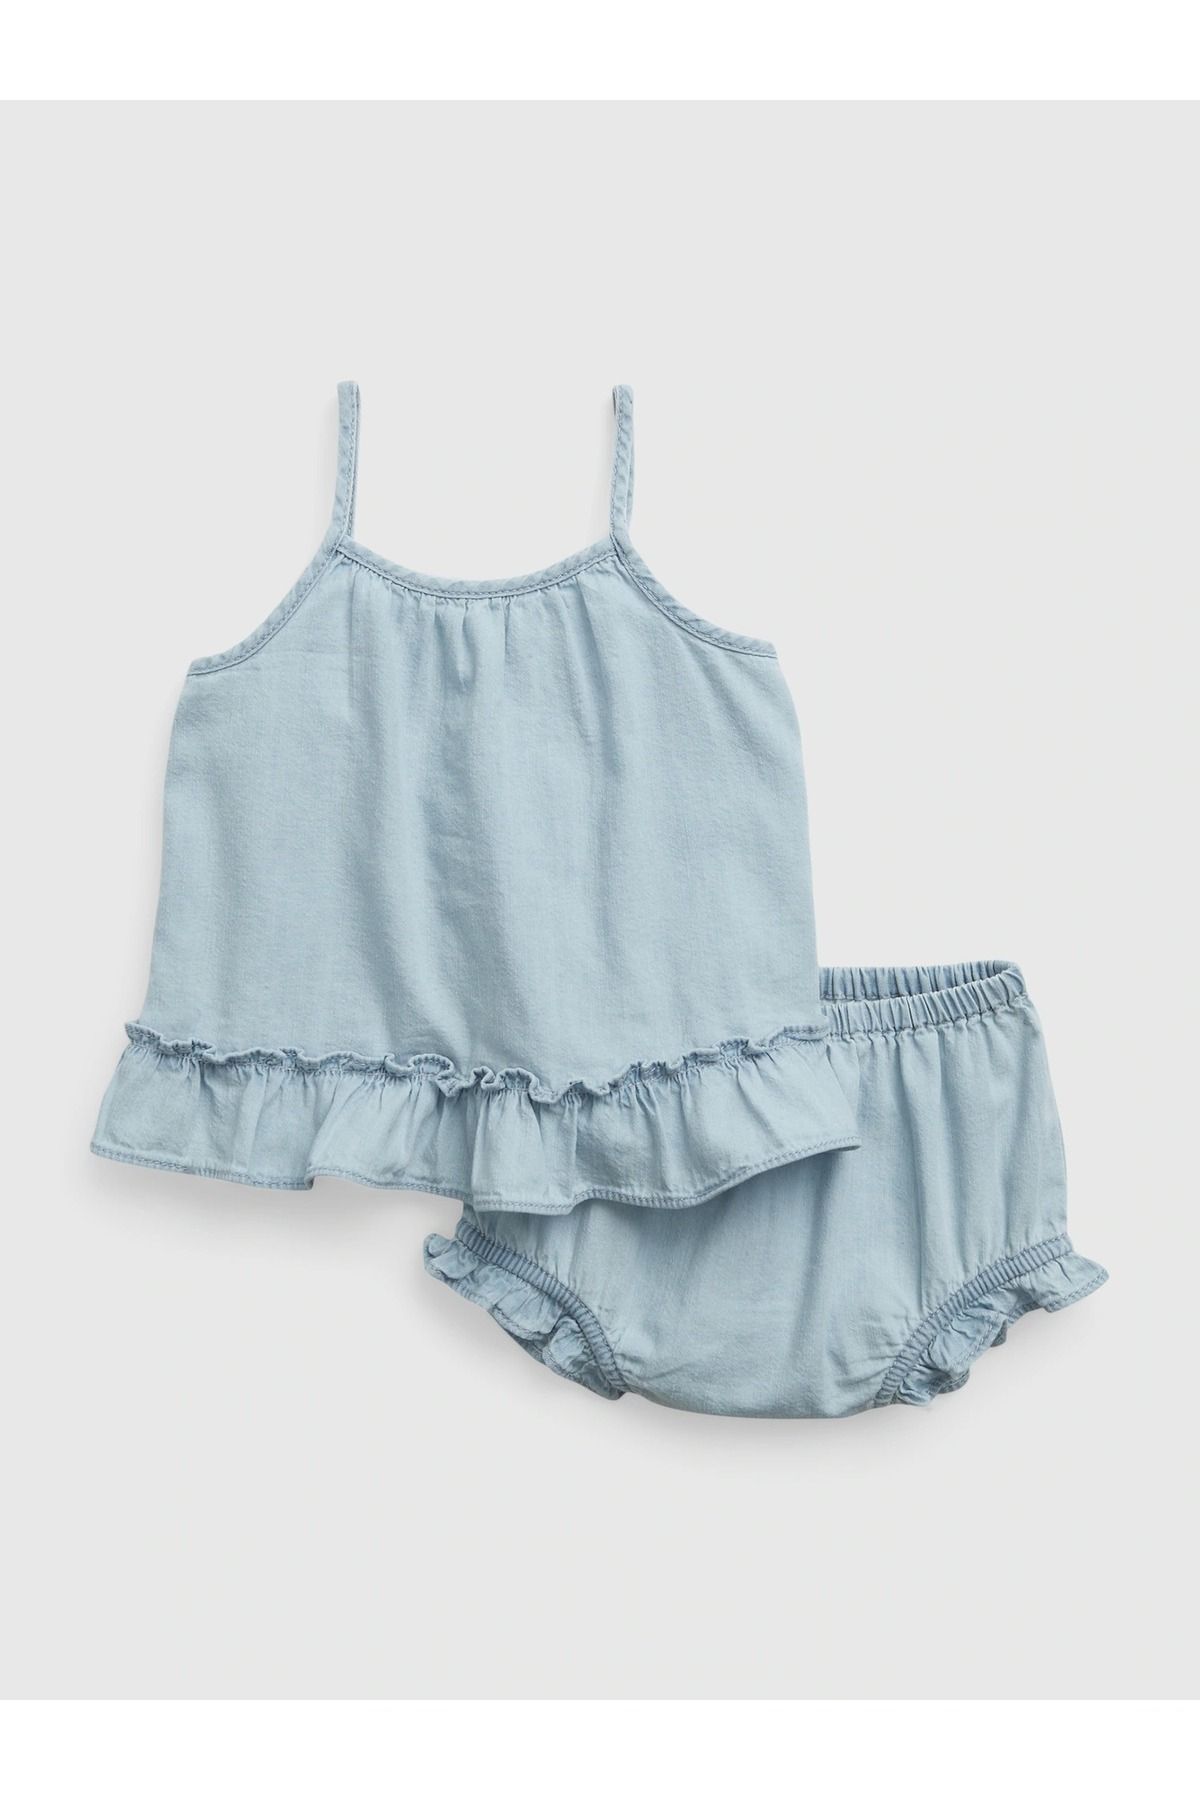 GAP Kız Bebek Açık Mavi Askılı Fırfırlı Denim Washwell™ Outfit Set